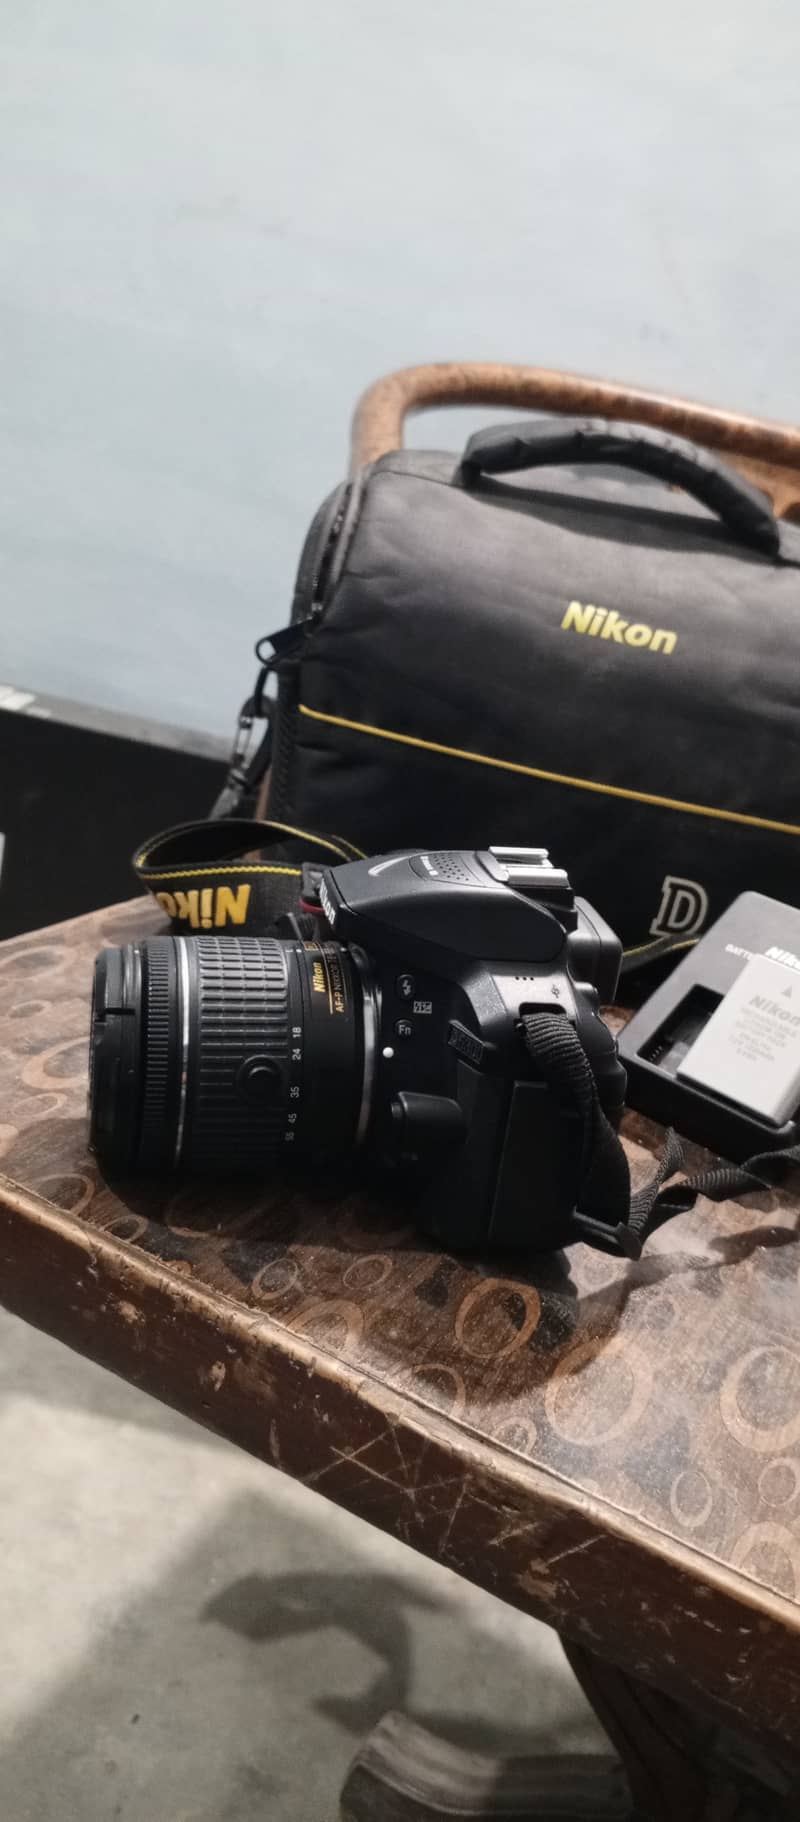 Nikon D3500 10